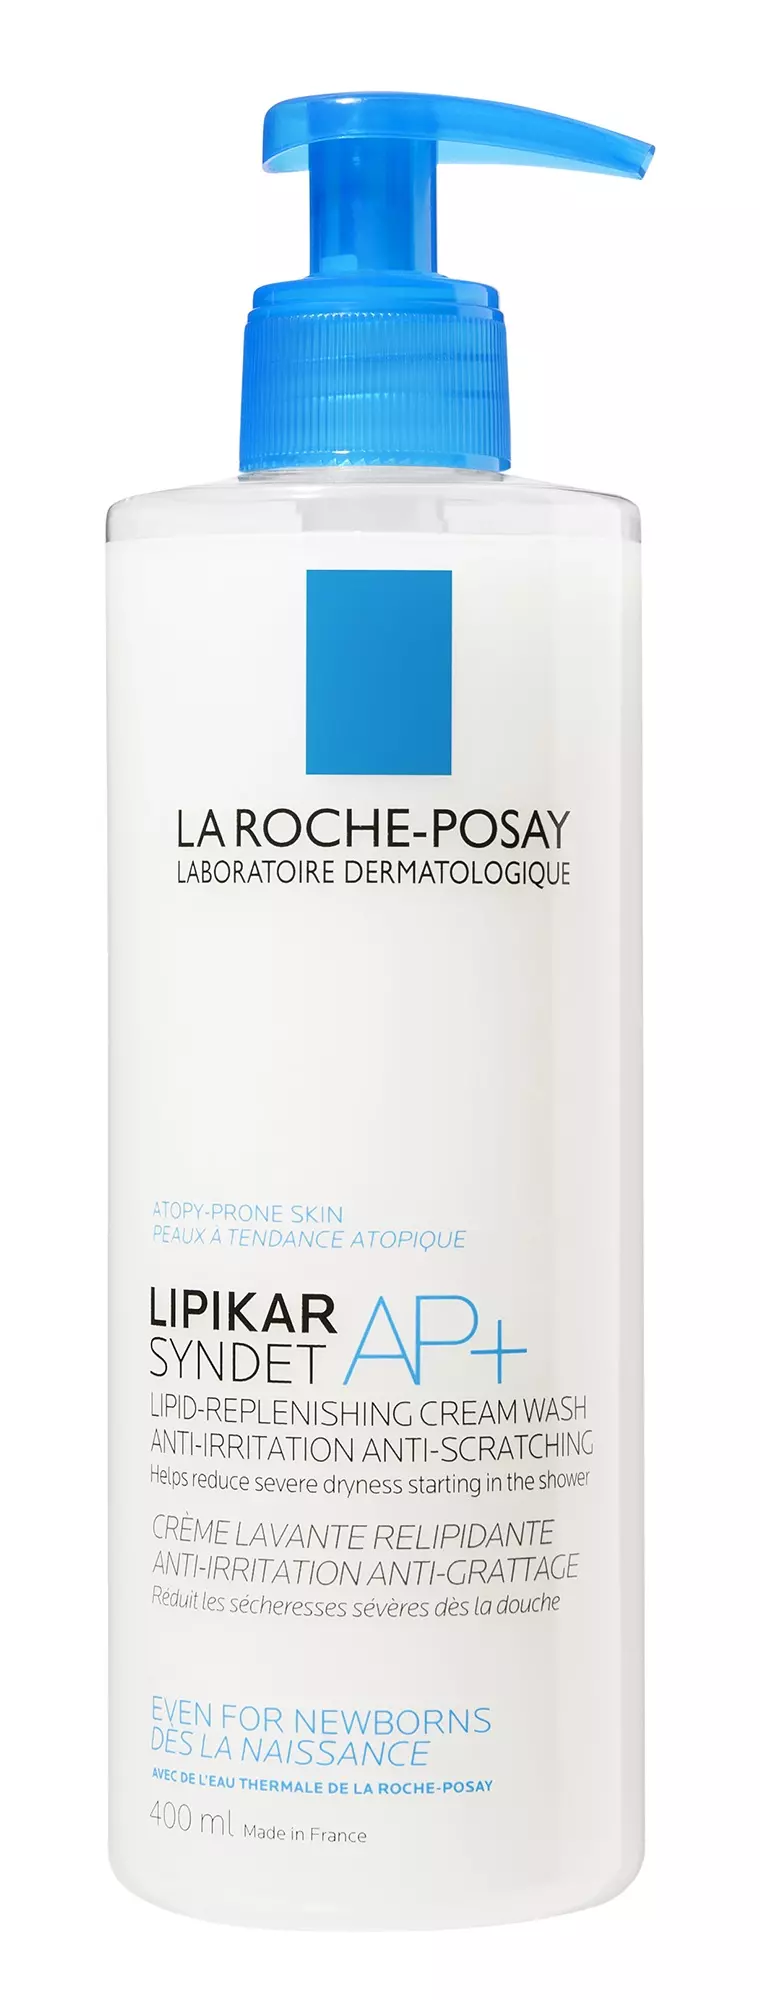 LA ROCHE-POSAY Lipikar Syndet AP+ lipidpótló krém-tusfürdő 400 ml